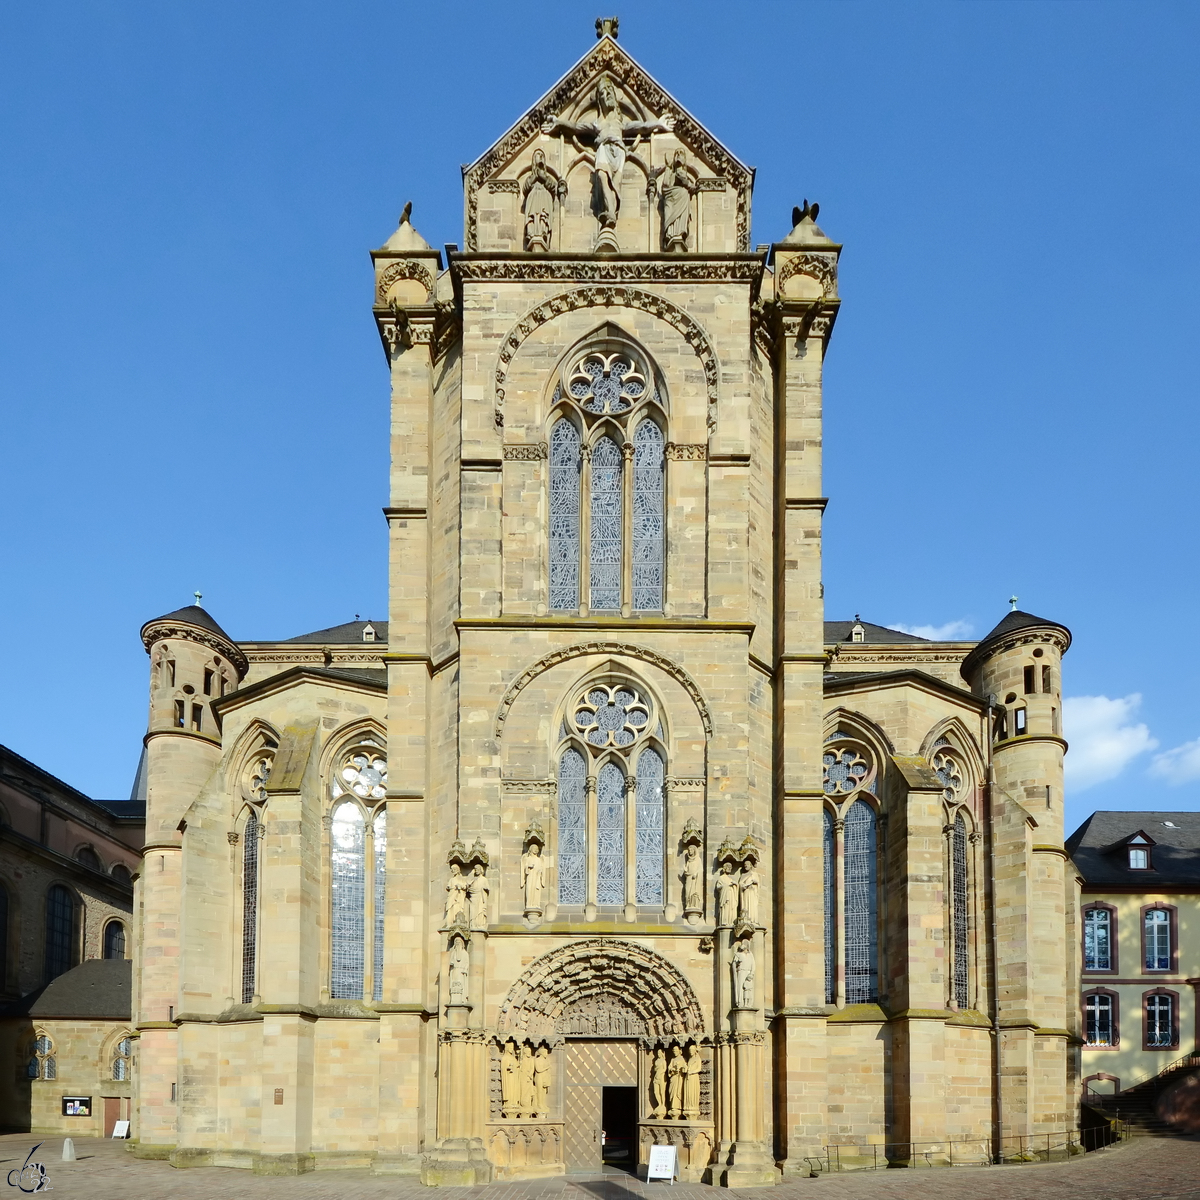 Die Liebfrauenkirche in Trier wurde im 13. Jahrhundert erbaut und gilt zusammen mit der Elisabethkirche in Marburg als lteste gotische Kirche in Deutschland. (Juli 2013)